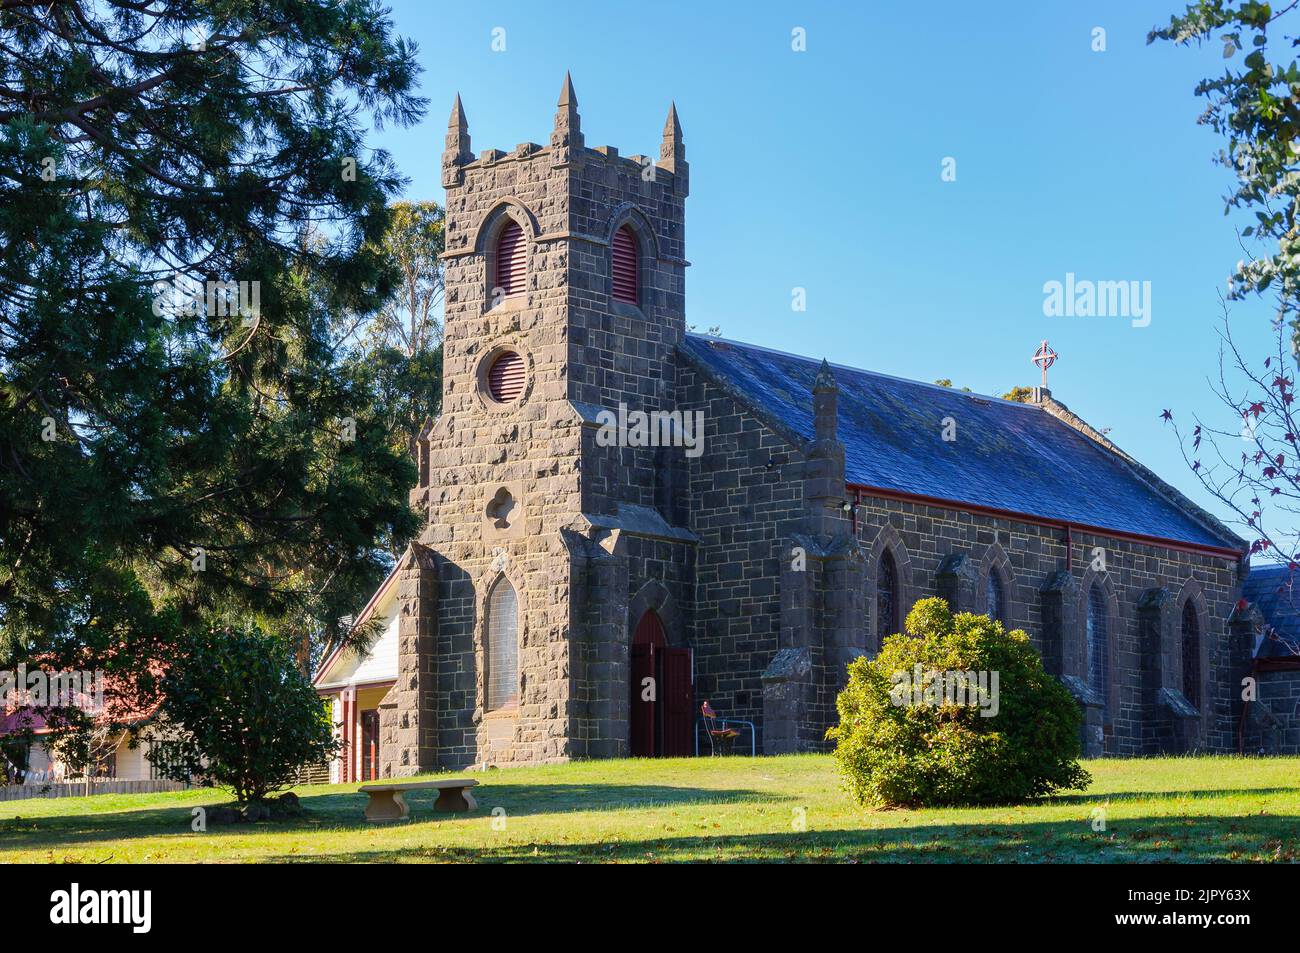 Construite en 1864, l'église anglicane St Mary's est l'un des bâtiments d'origine du canton historique - Woodend, Victoria, Australie Banque D'Images